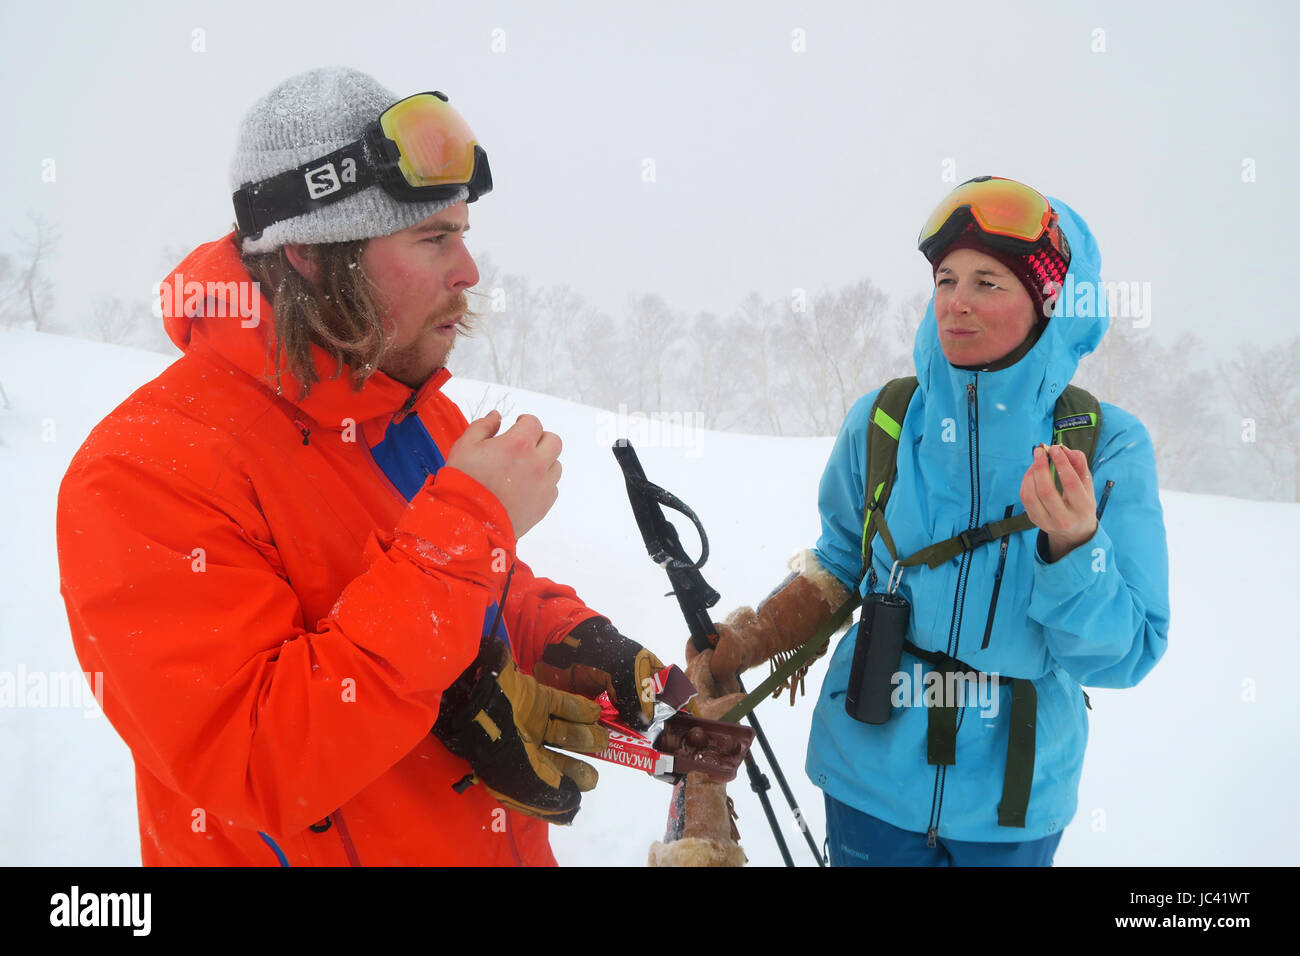 Une femme d'un skieur masculin de prendre une pause gourmande tout en ski de randonnée dans l'arrière-pays de Kiroro Skiing sur l'île du nord du Japon Hokkaido, célèbre pour l'extrême neige tomber. Ils ont heureusement manger du chocolat. Banque D'Images